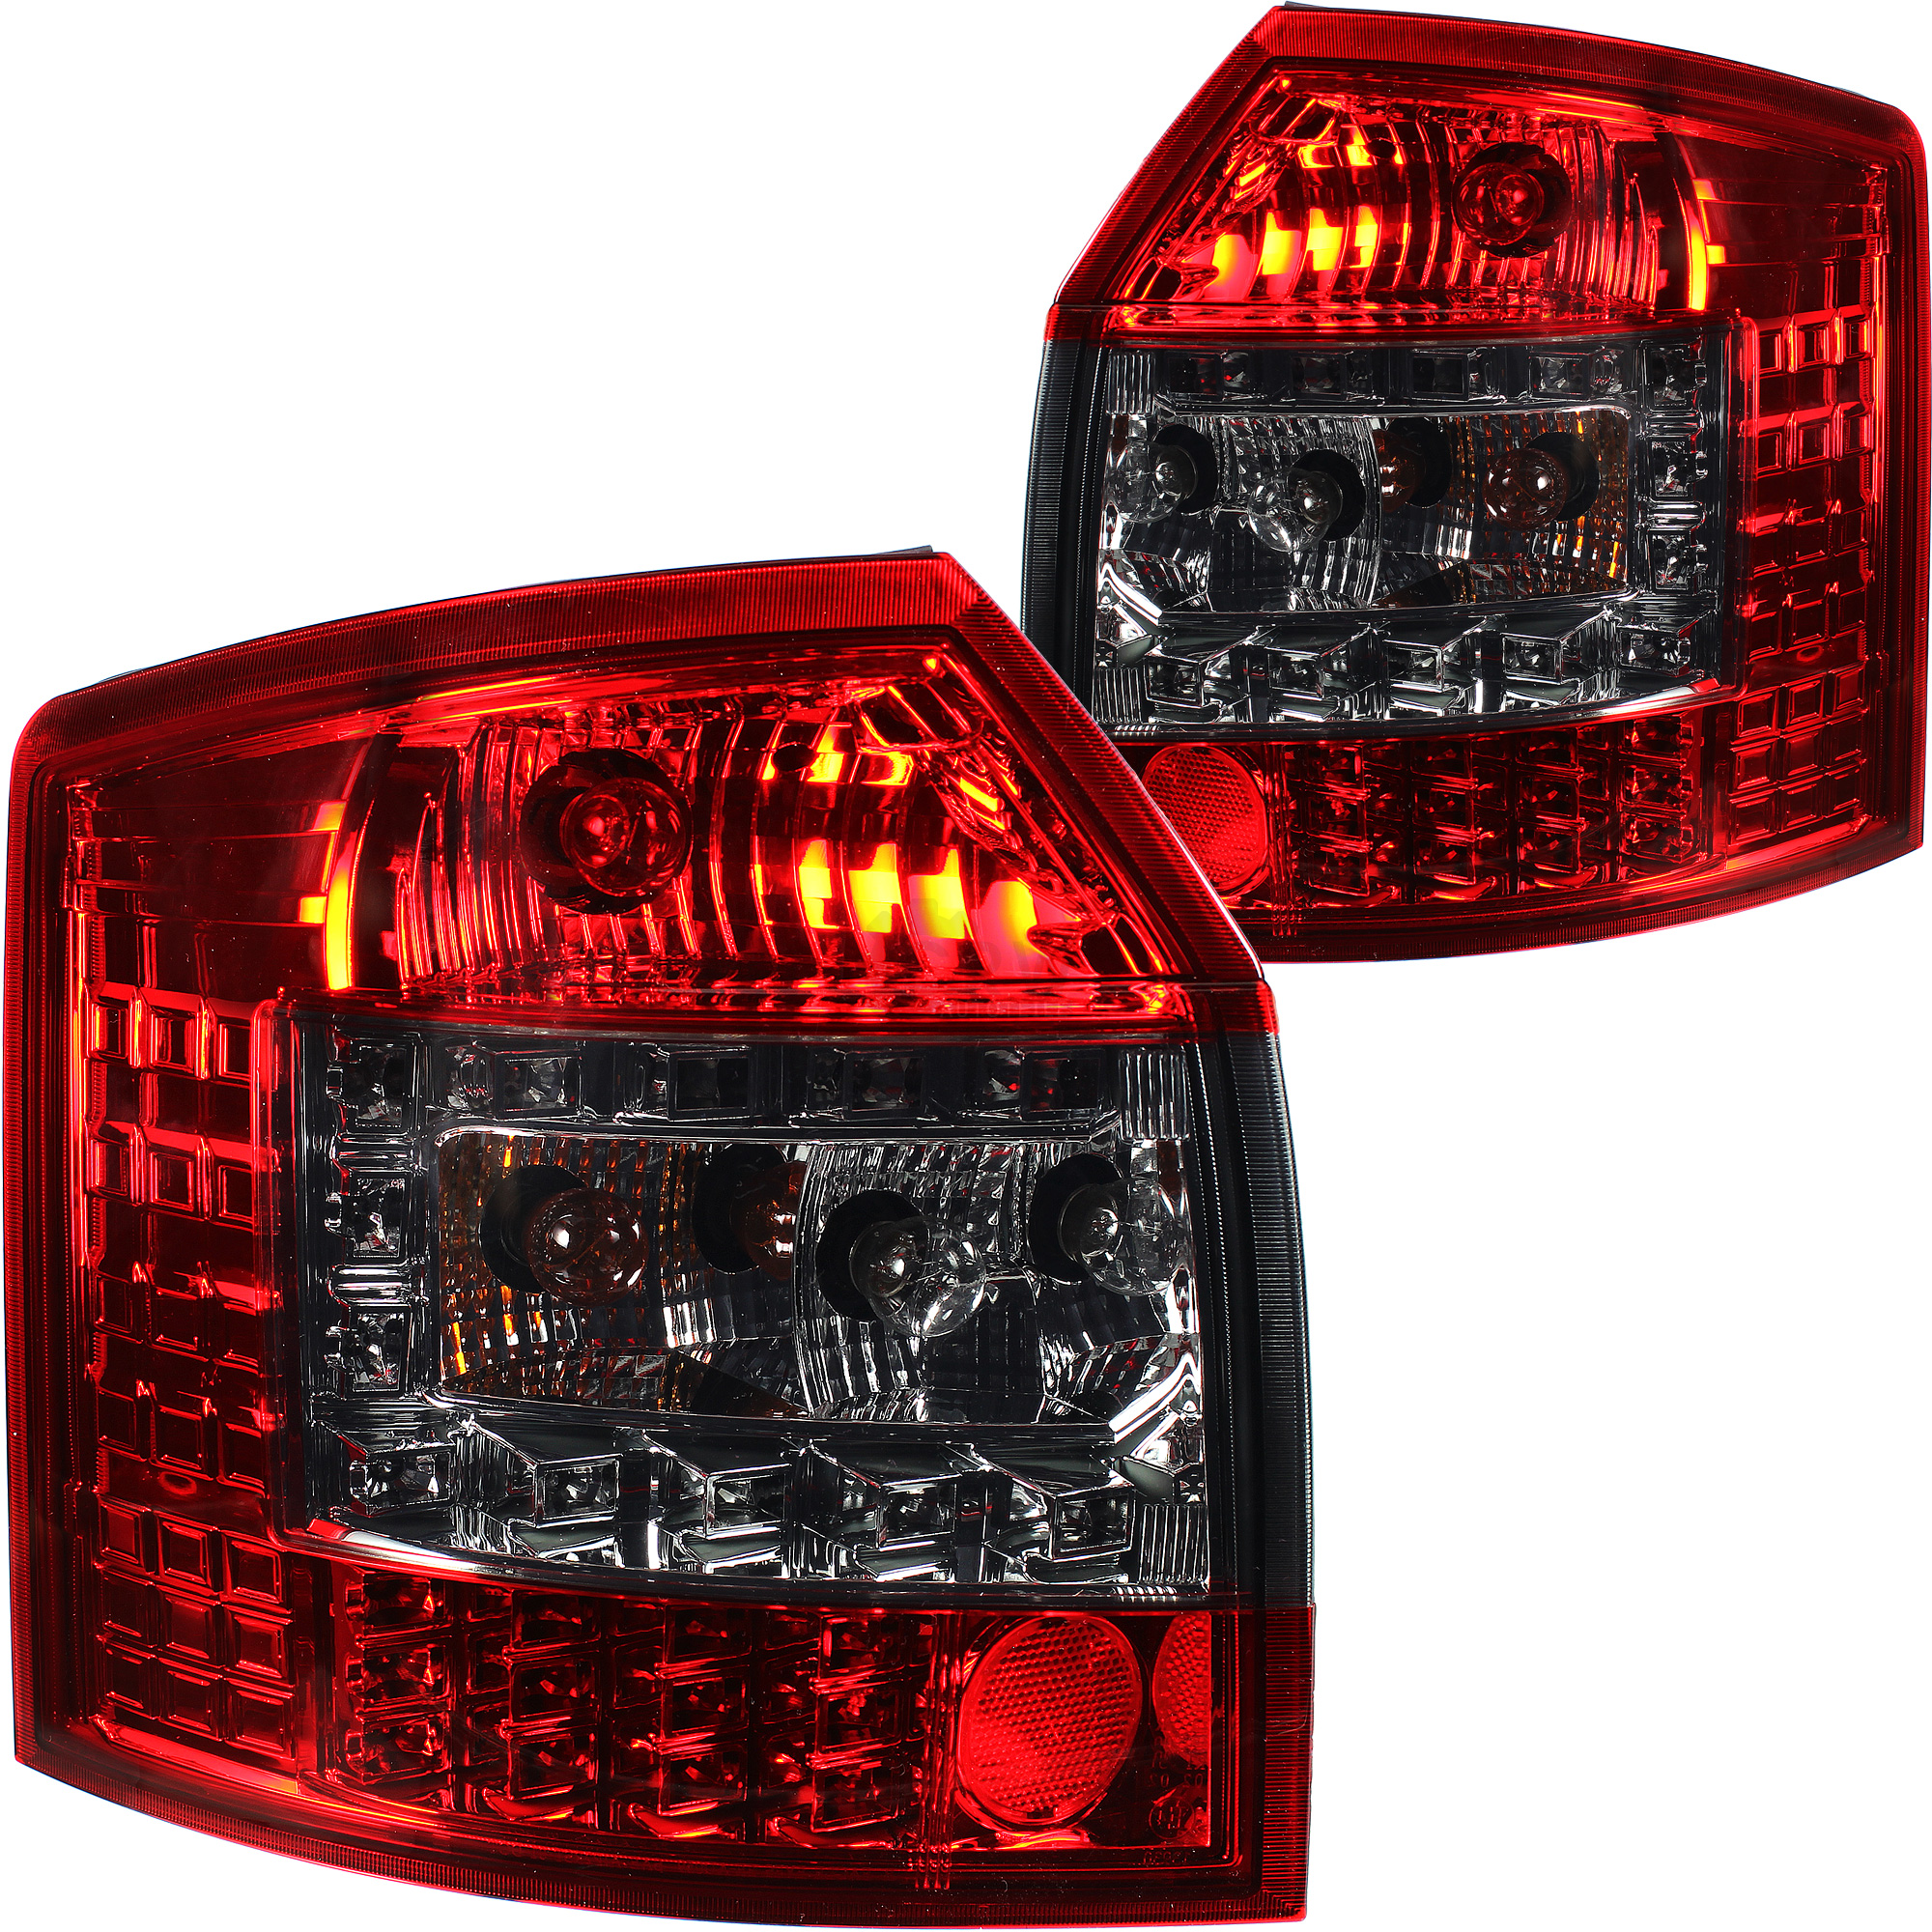 LED Rückleuchten Satz rot smoke schwarz für Audi A4 Avant Kombi Typ 8E B6 00-04